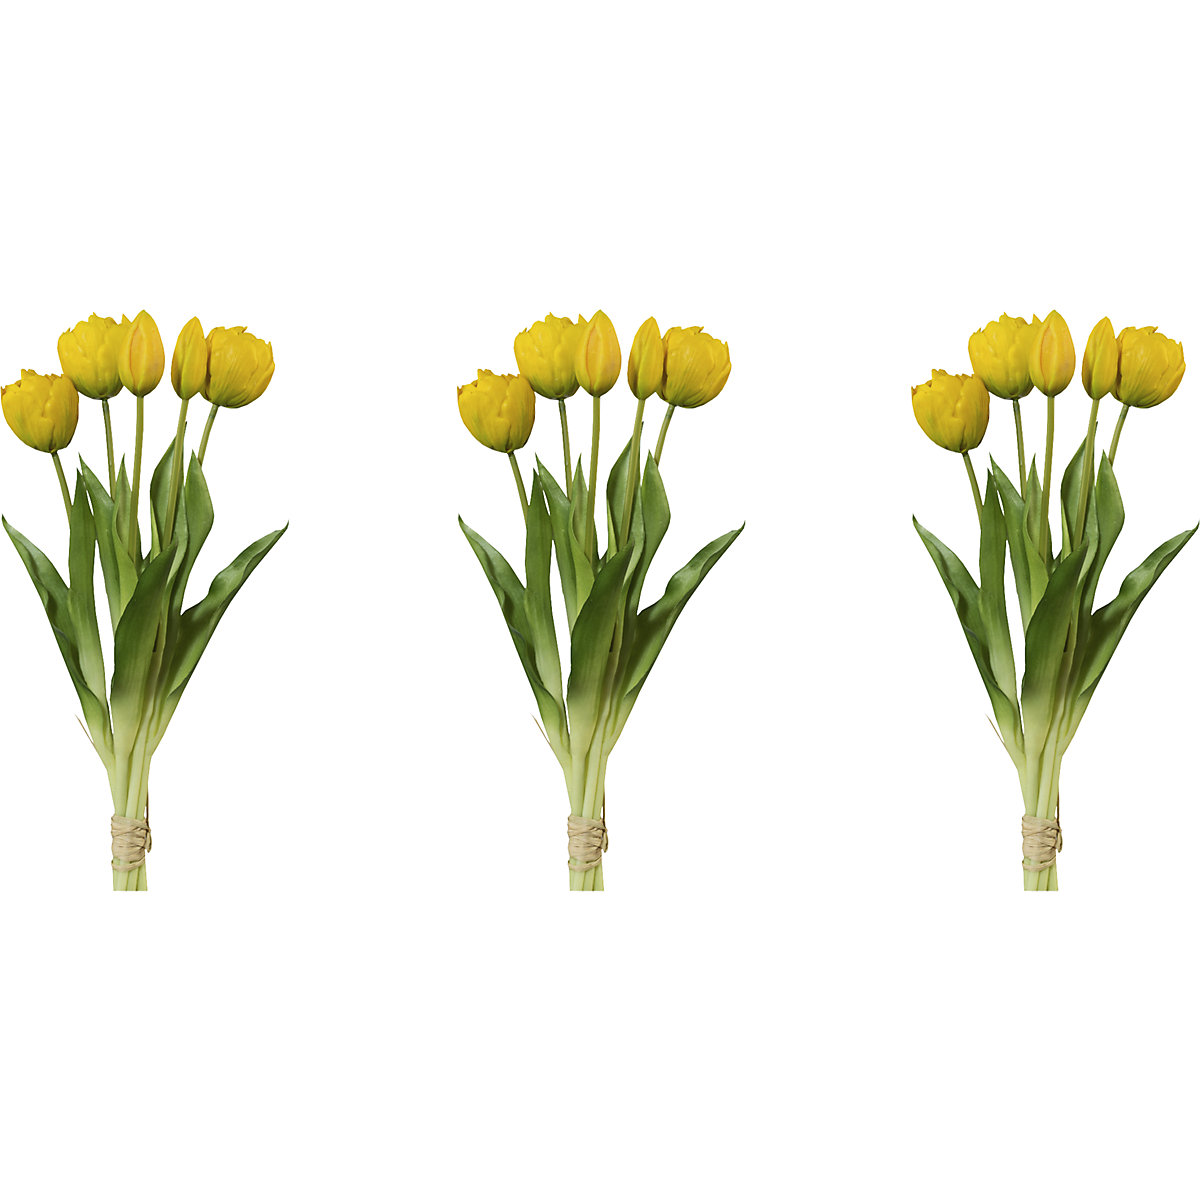 Teltvirágú tulipánok, valódi tapintás, 5 db-os csokor